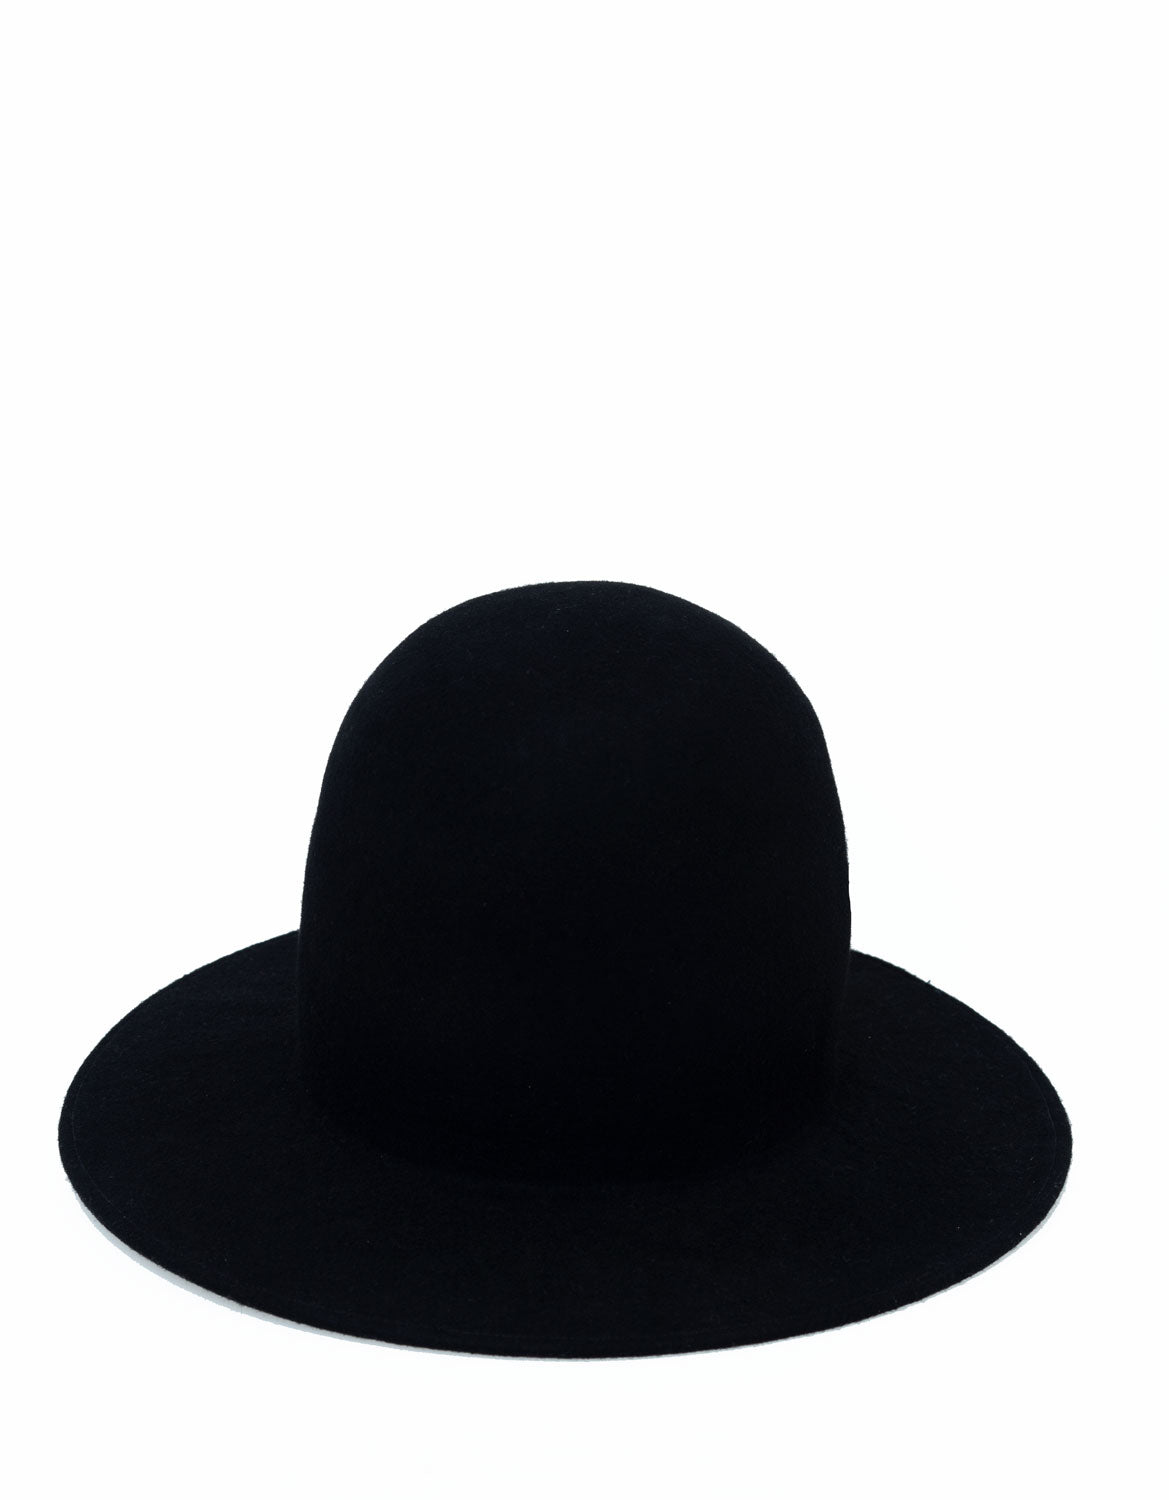 Erykah-Modular-Domed-Hat-in-black-Wool-Felt-by-OBJECT-_-DAWN_31543068-8f2c-4856-b6c5-e633fe381ae5.jpg